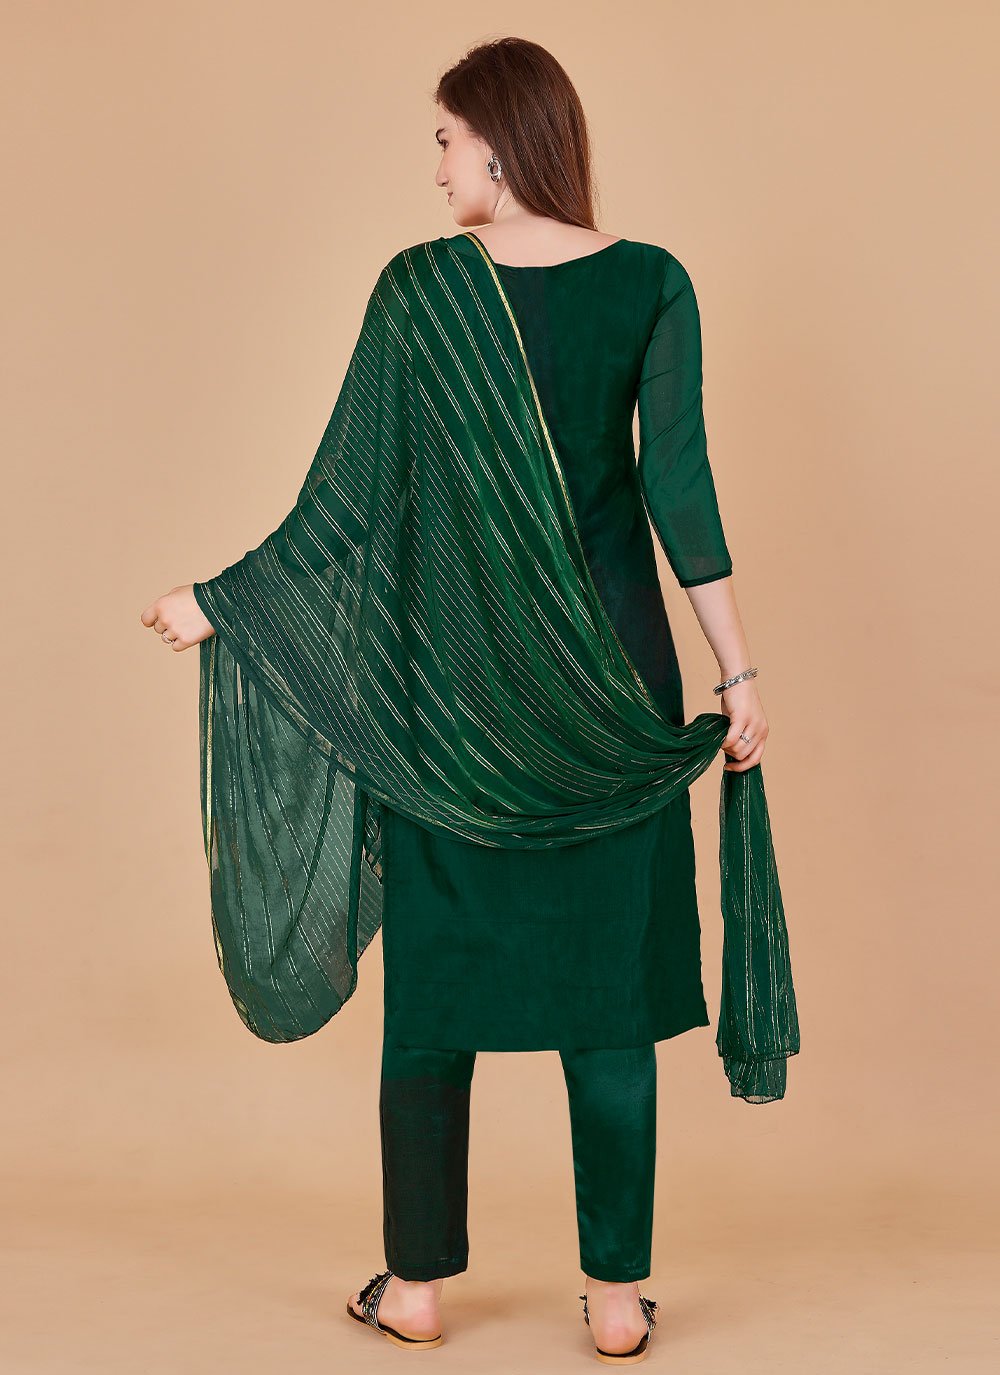 Salwar Suit Jacquard Organza Green Lace Salwar Kameez